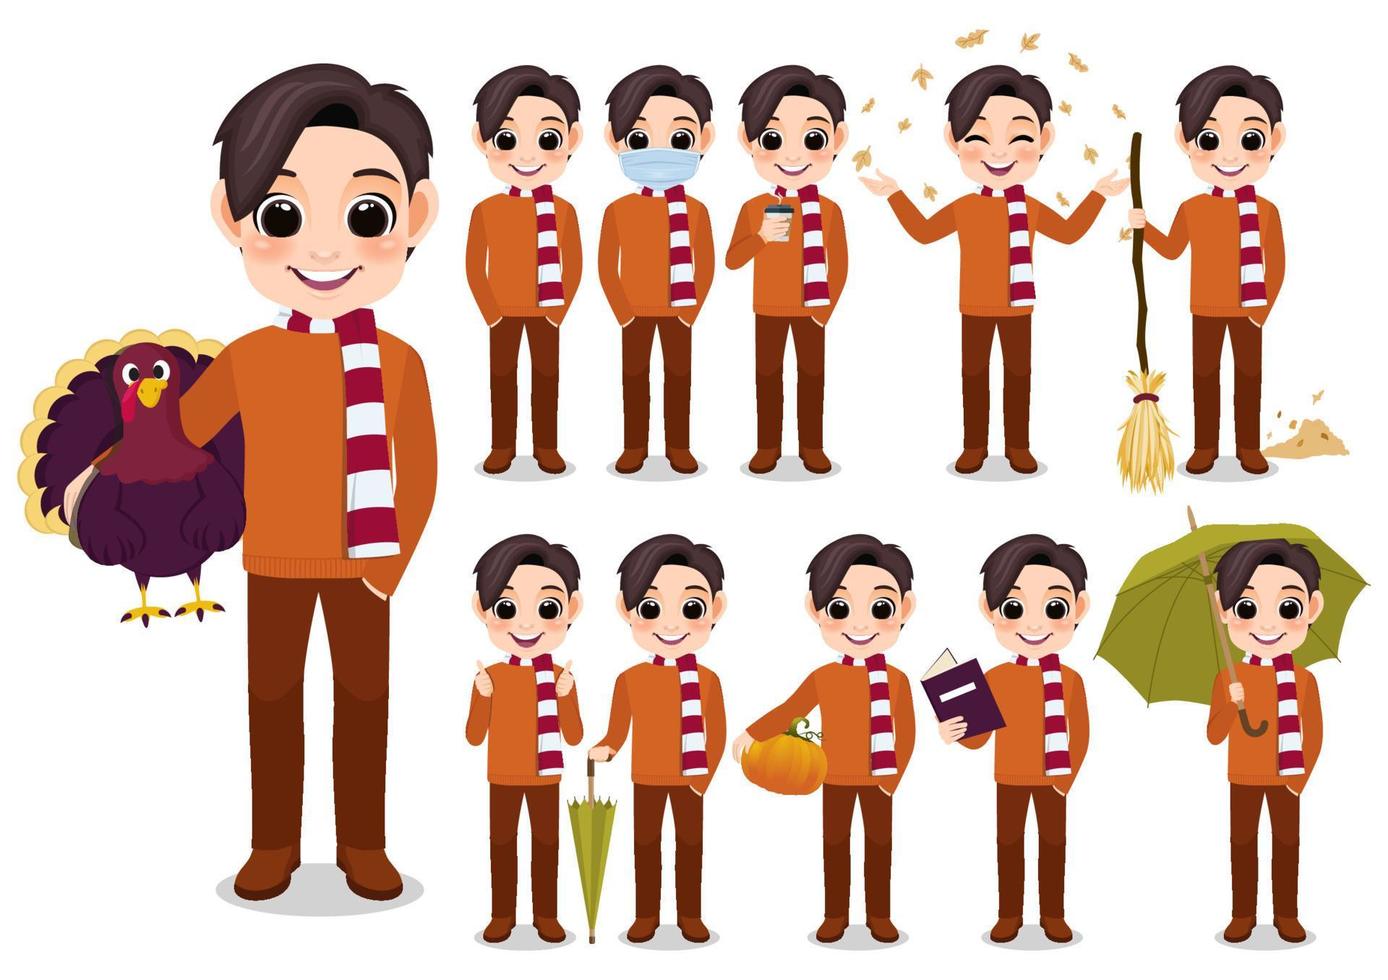 raccolta di attività all'aperto del personaggio dei cartoni animati del ragazzo di autunno con il maglione e la sciarpa arancioni, fumetto isolato sull'illustrazione bianca di vettore del fondo